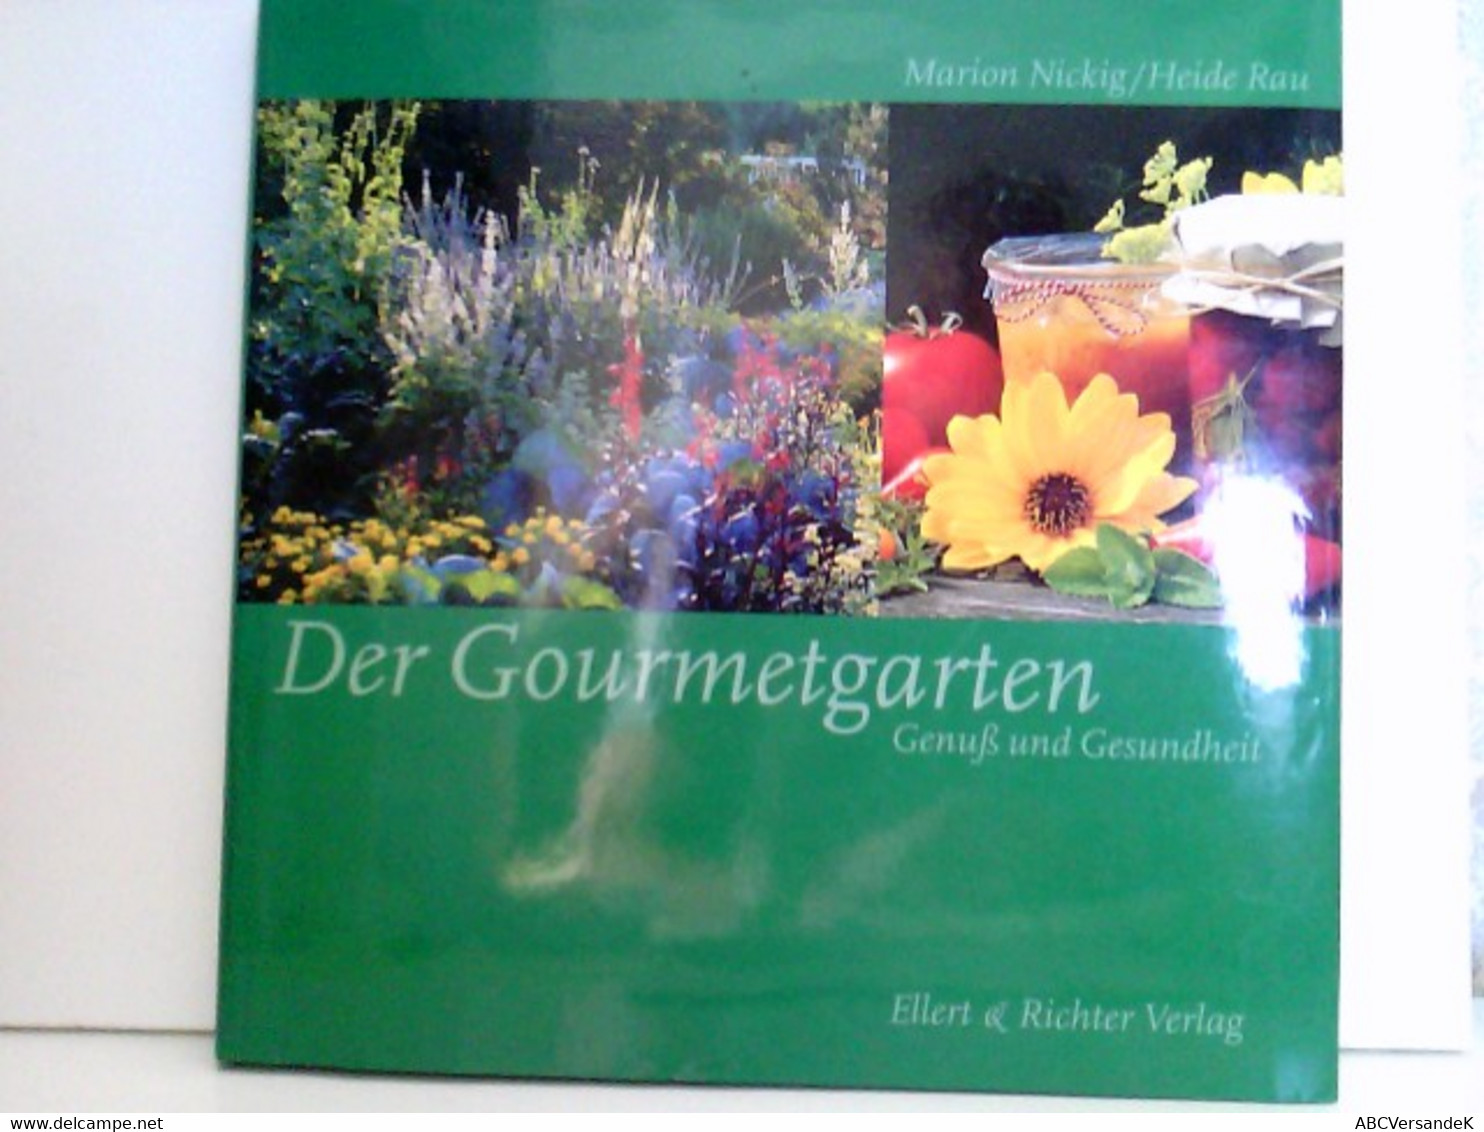 Der Gourmetgarten - Botanik